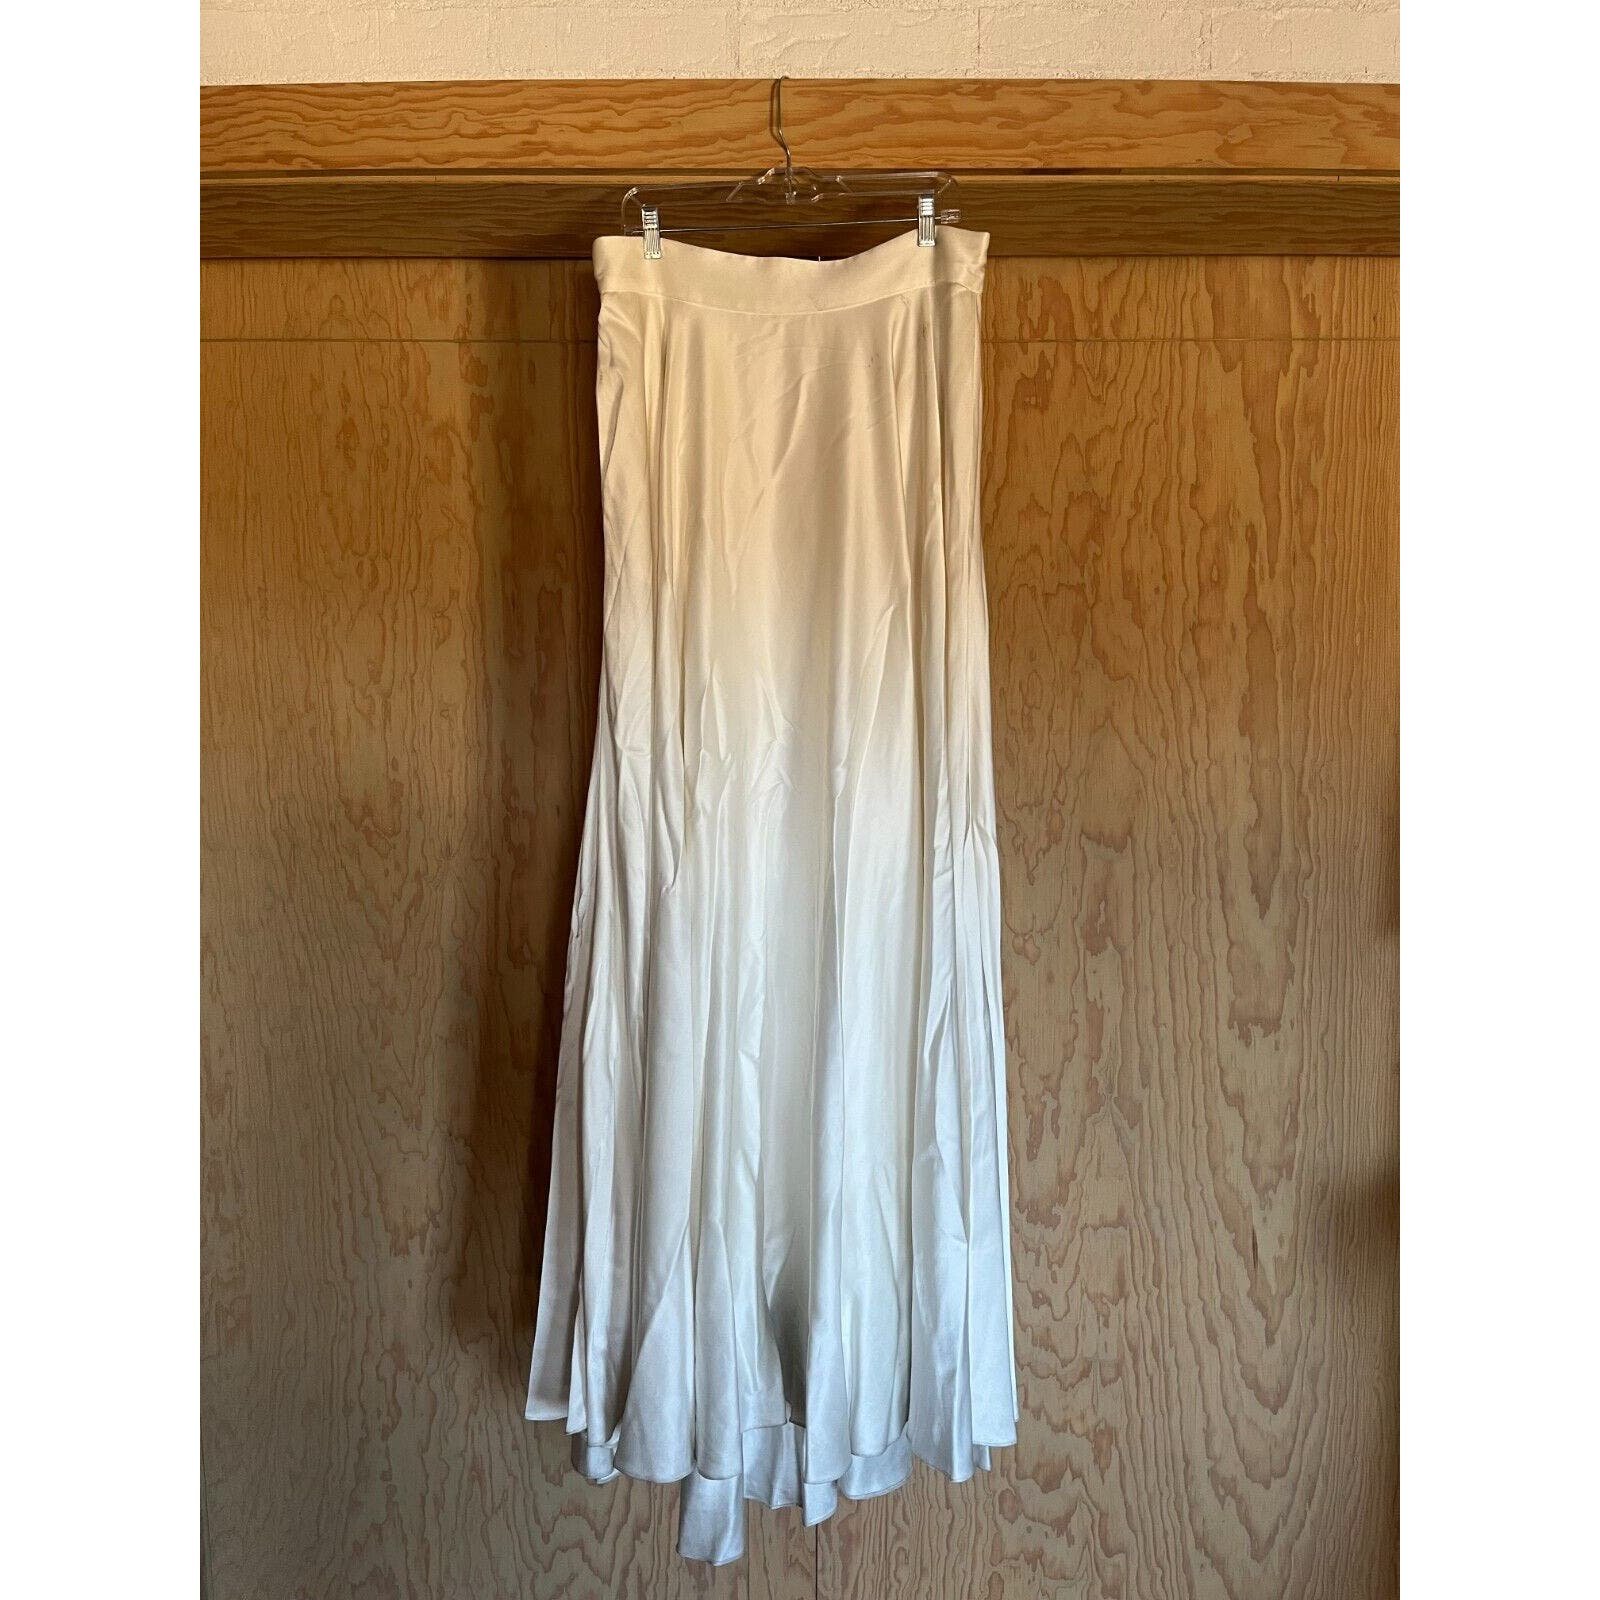 Anthropologie BHLDN Skirt Size 4 Ivory Catherine Deane Wedding NWT SAMPLE Pocket l8TuFJ9k8